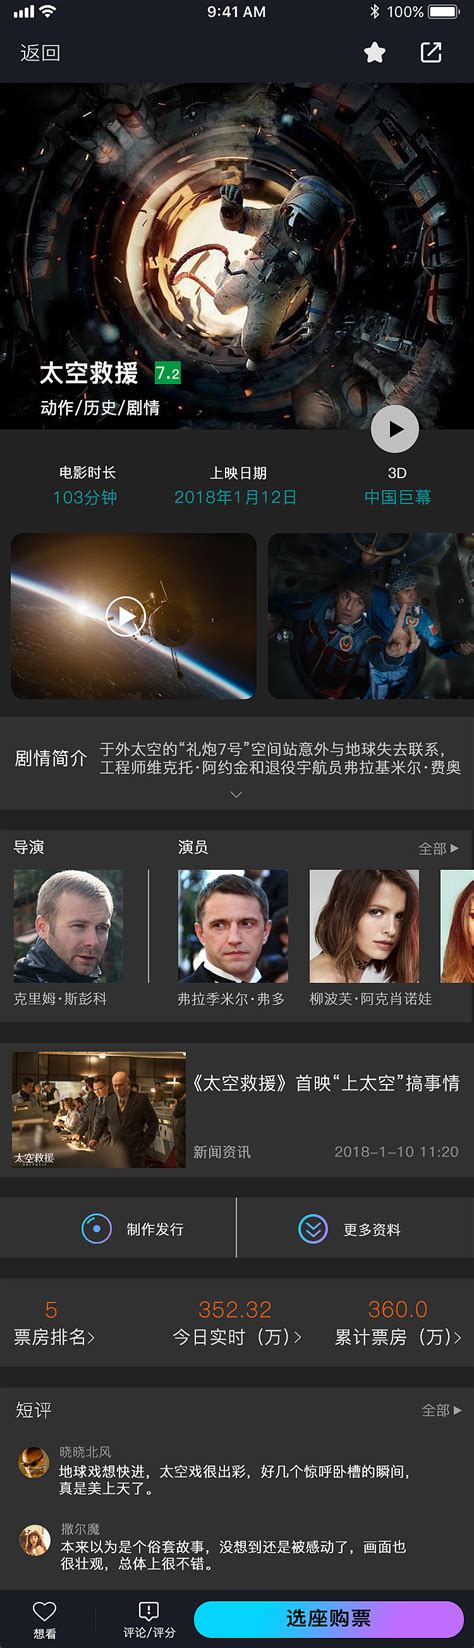 漂亮的电影/视频应用APP CineBox Movie App UI&UX - 设计口袋